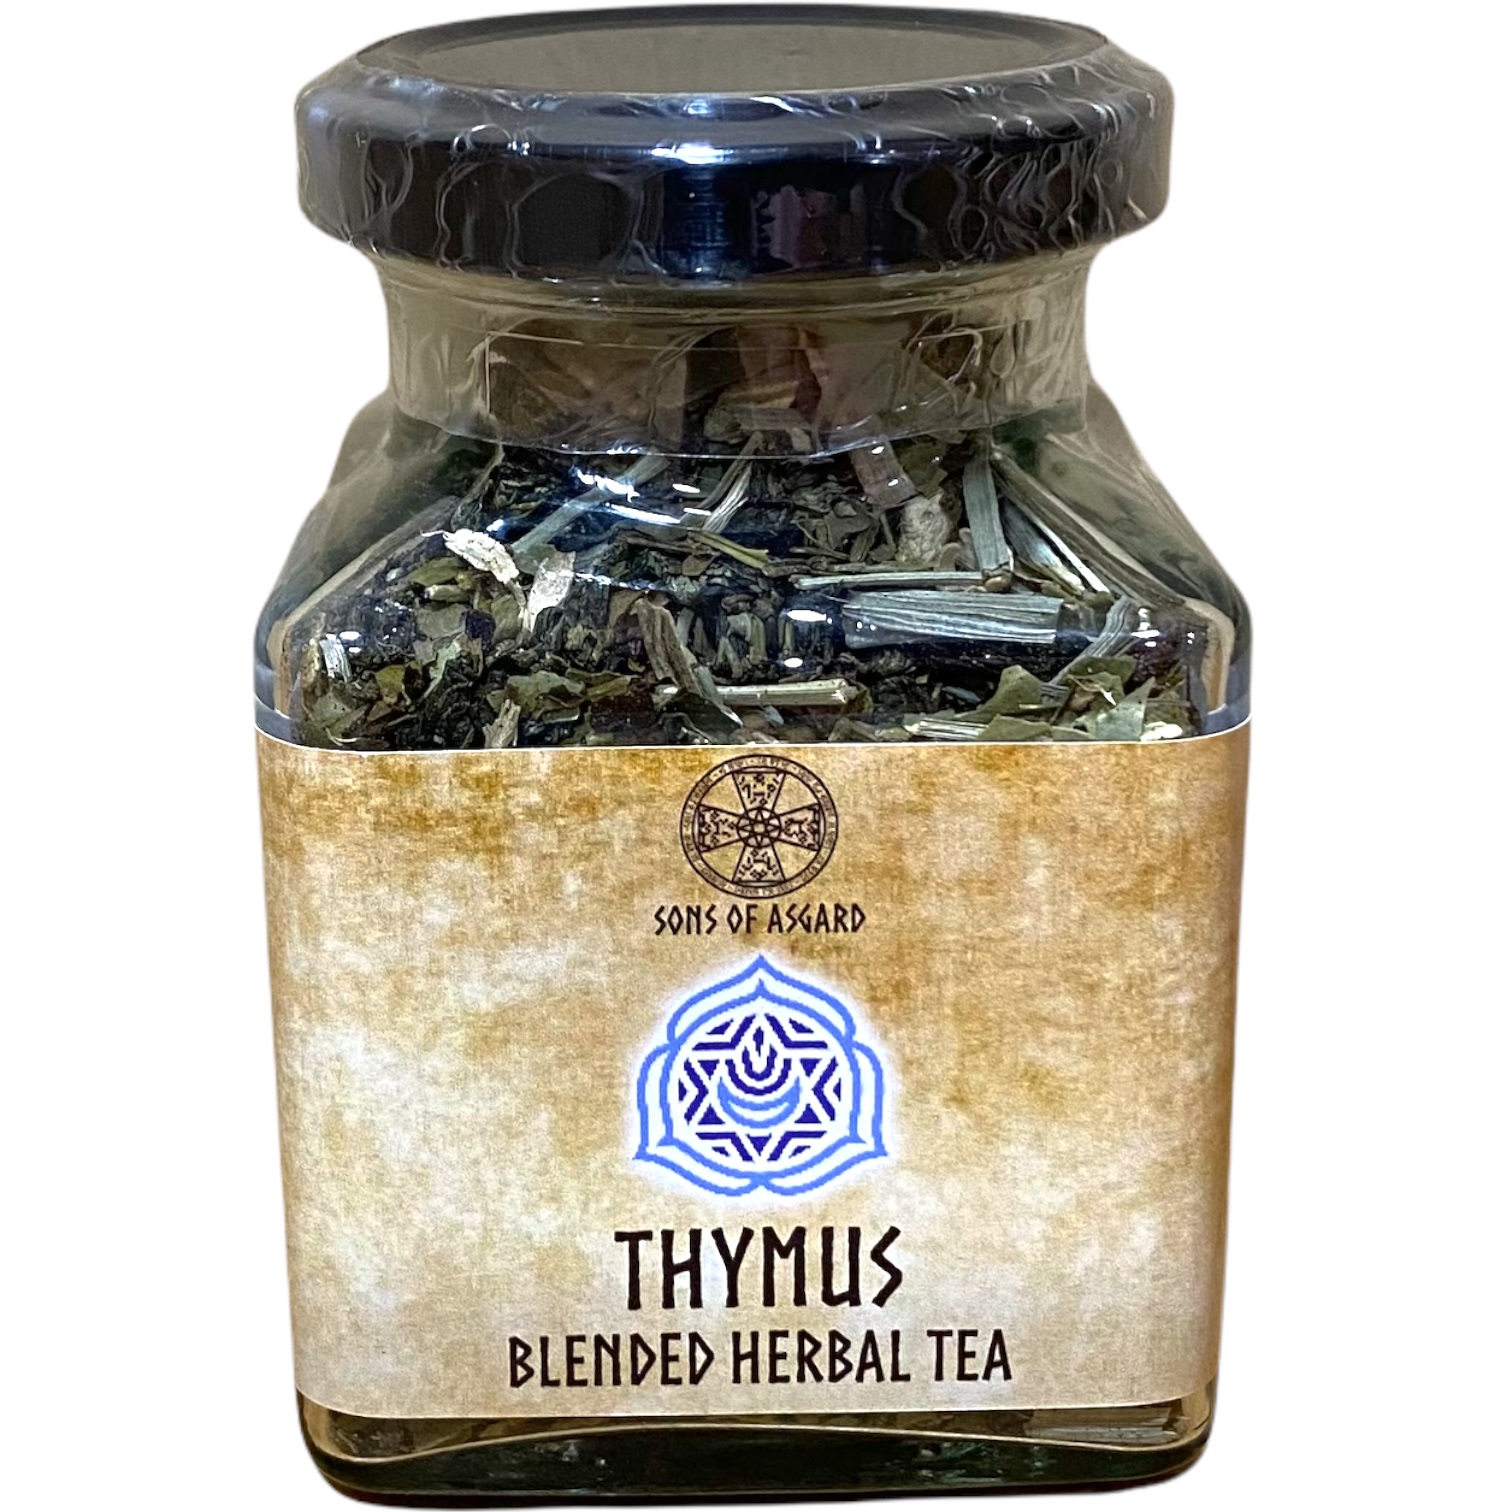 Thymus Chakra - Blended Herbal Tea